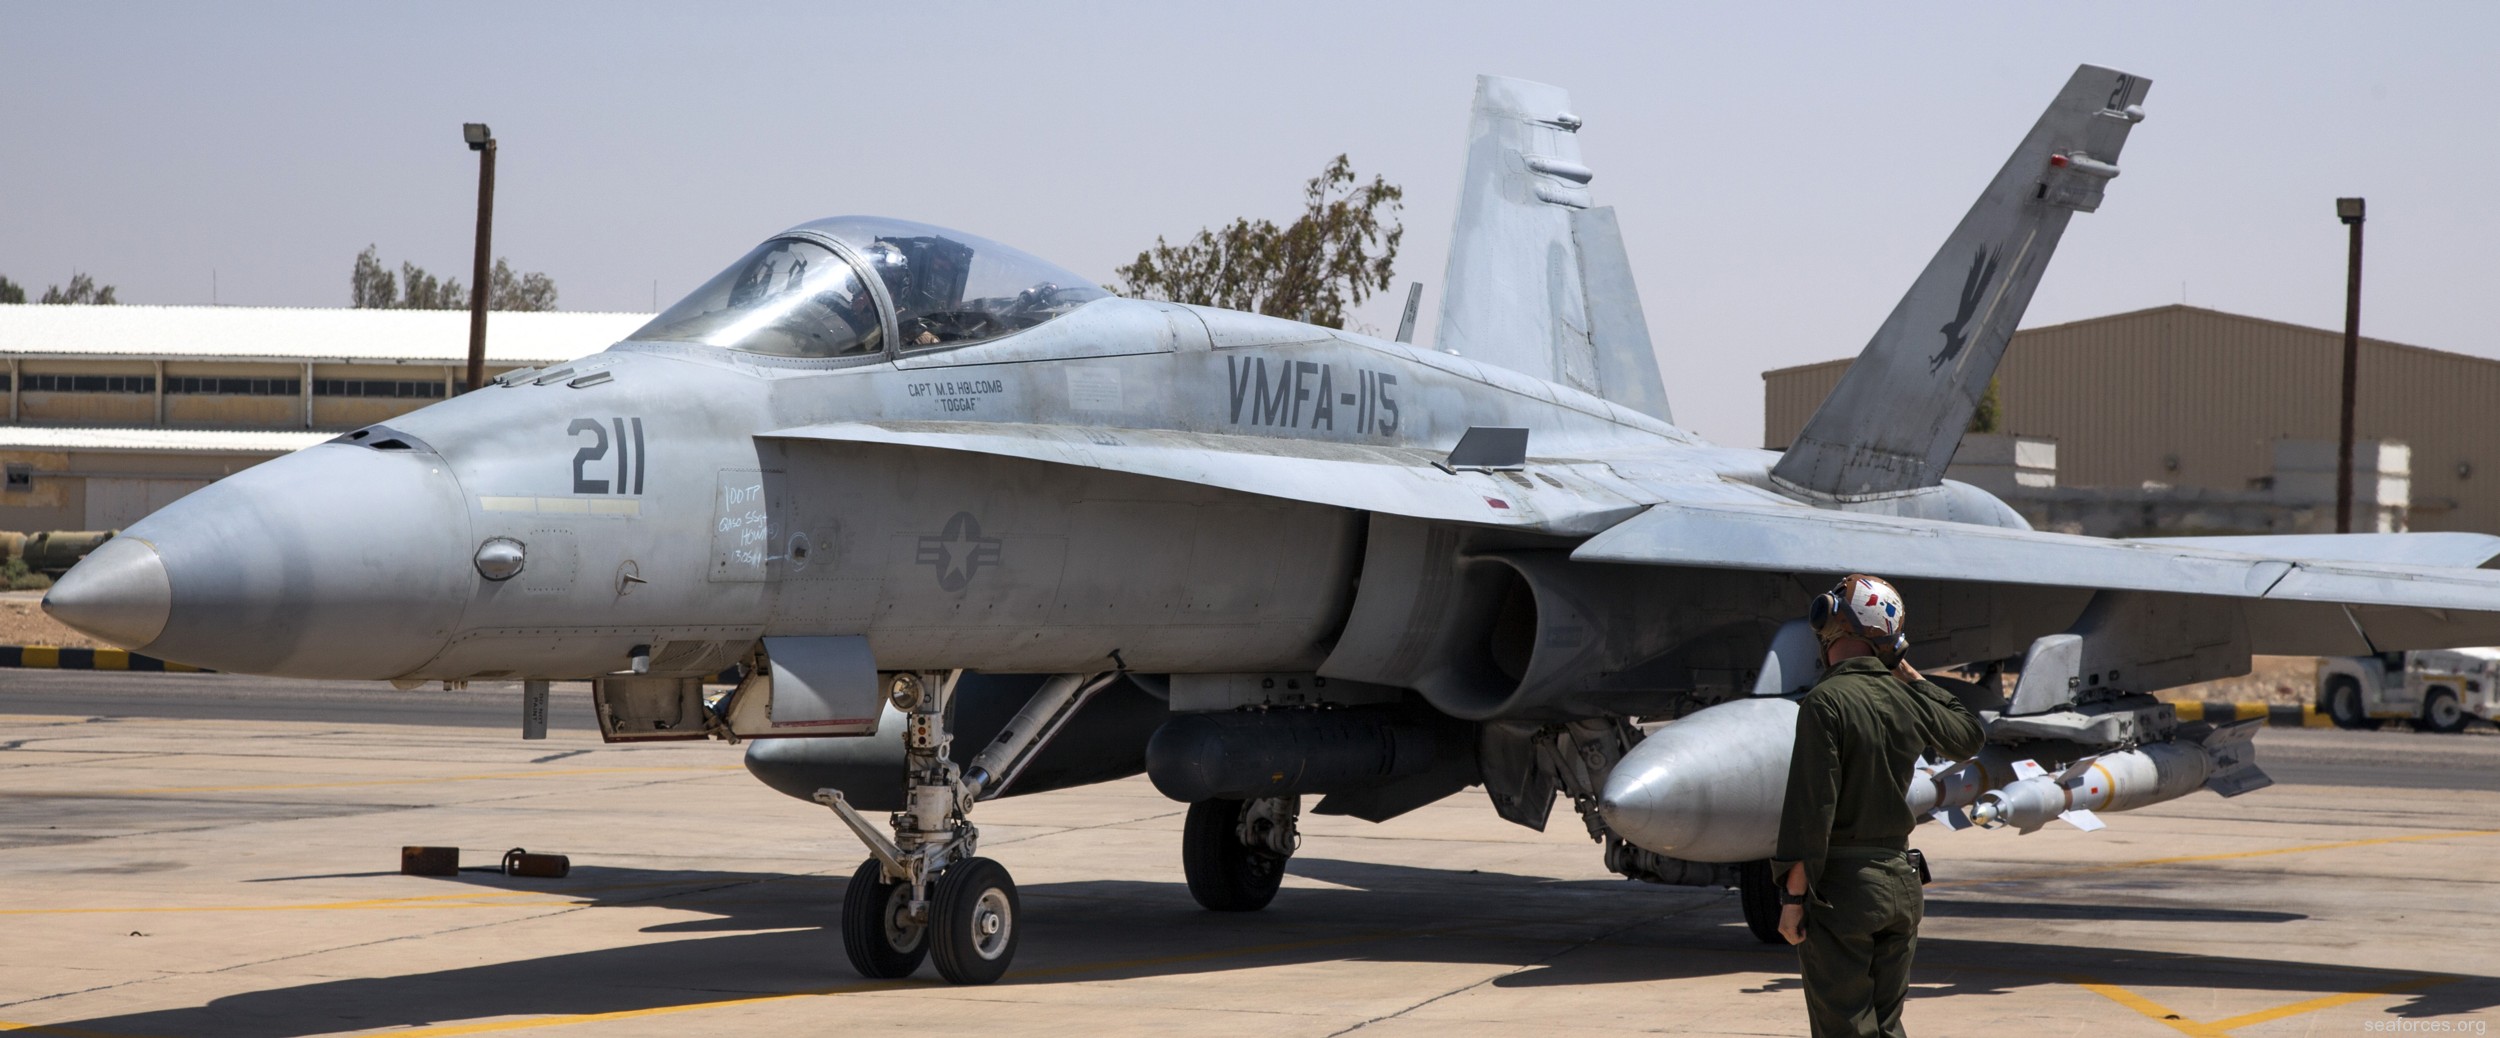 vmfa-115 silver eagles marine fighter attack squadron f/a-18a+ hornet 146